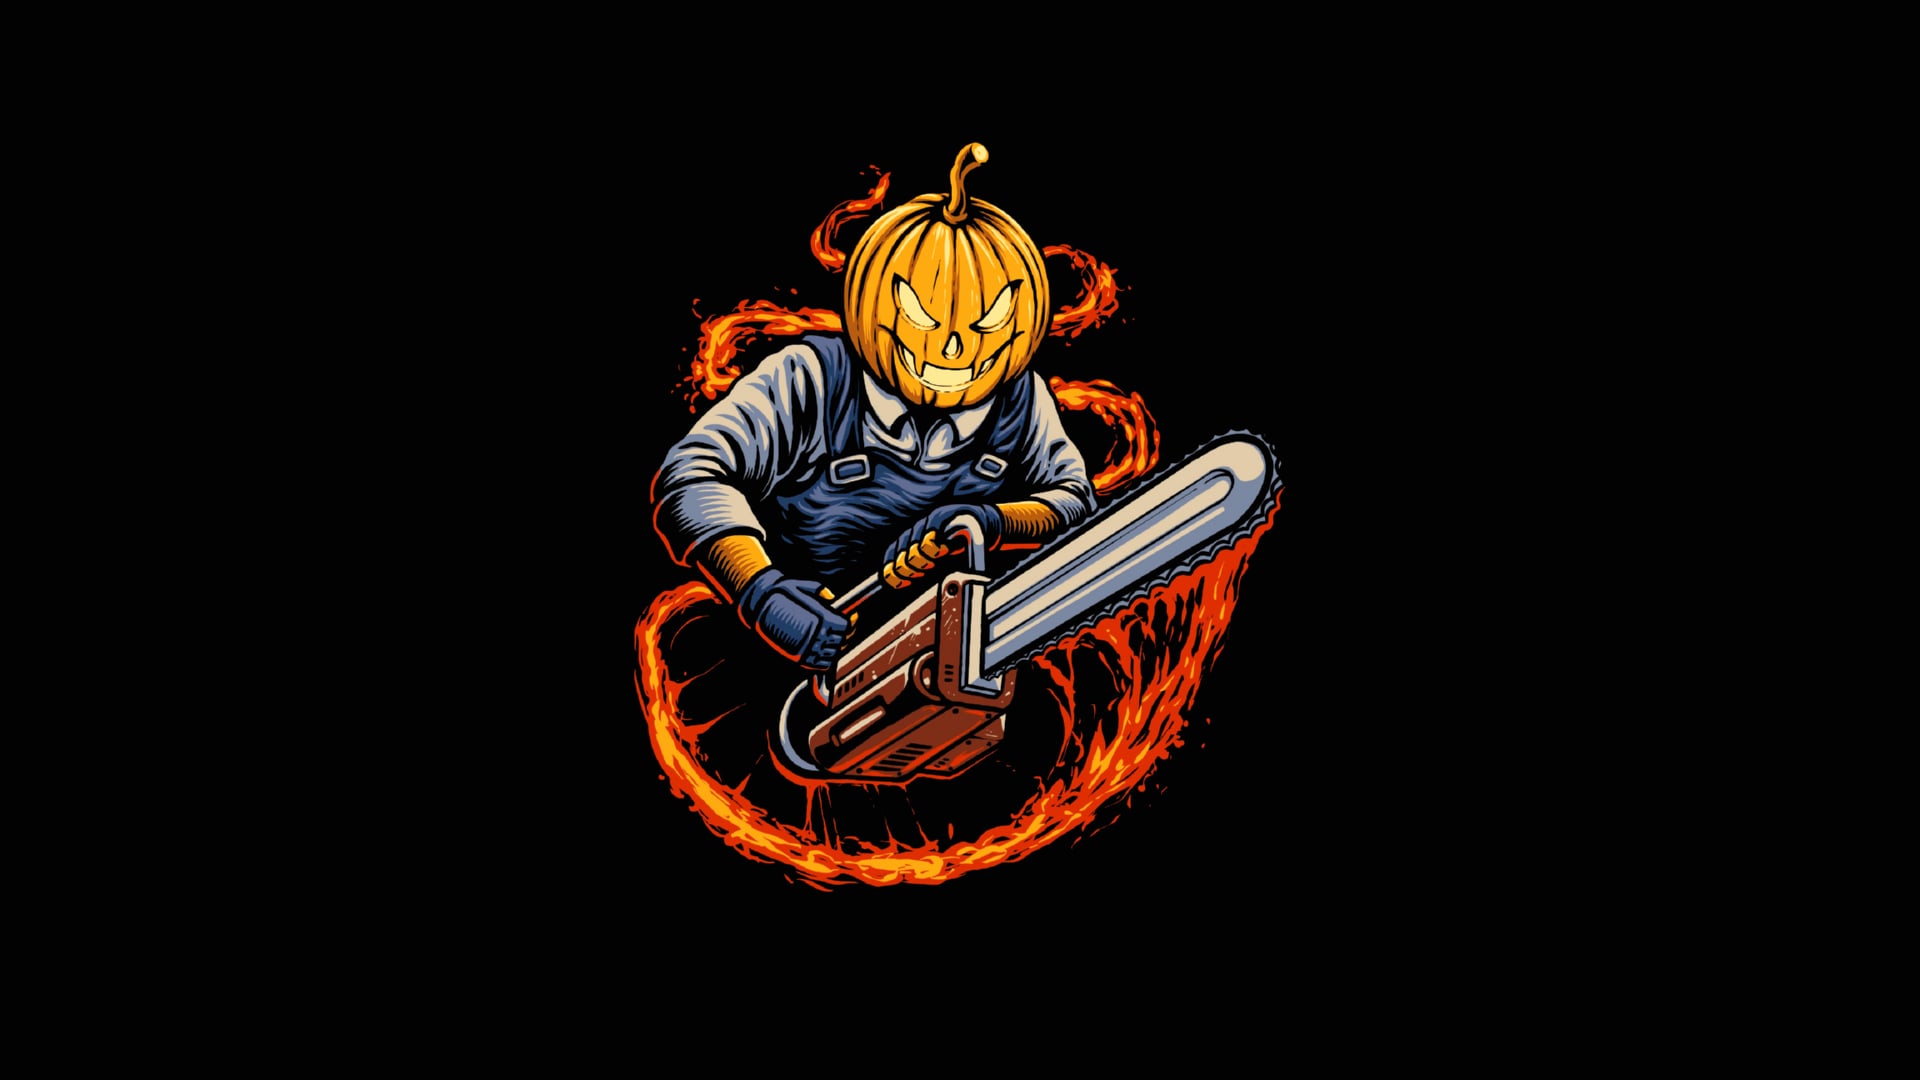 Digital Art Halloween Pumpkin at 1024 x 1024 iPad size wallpapers HD quality